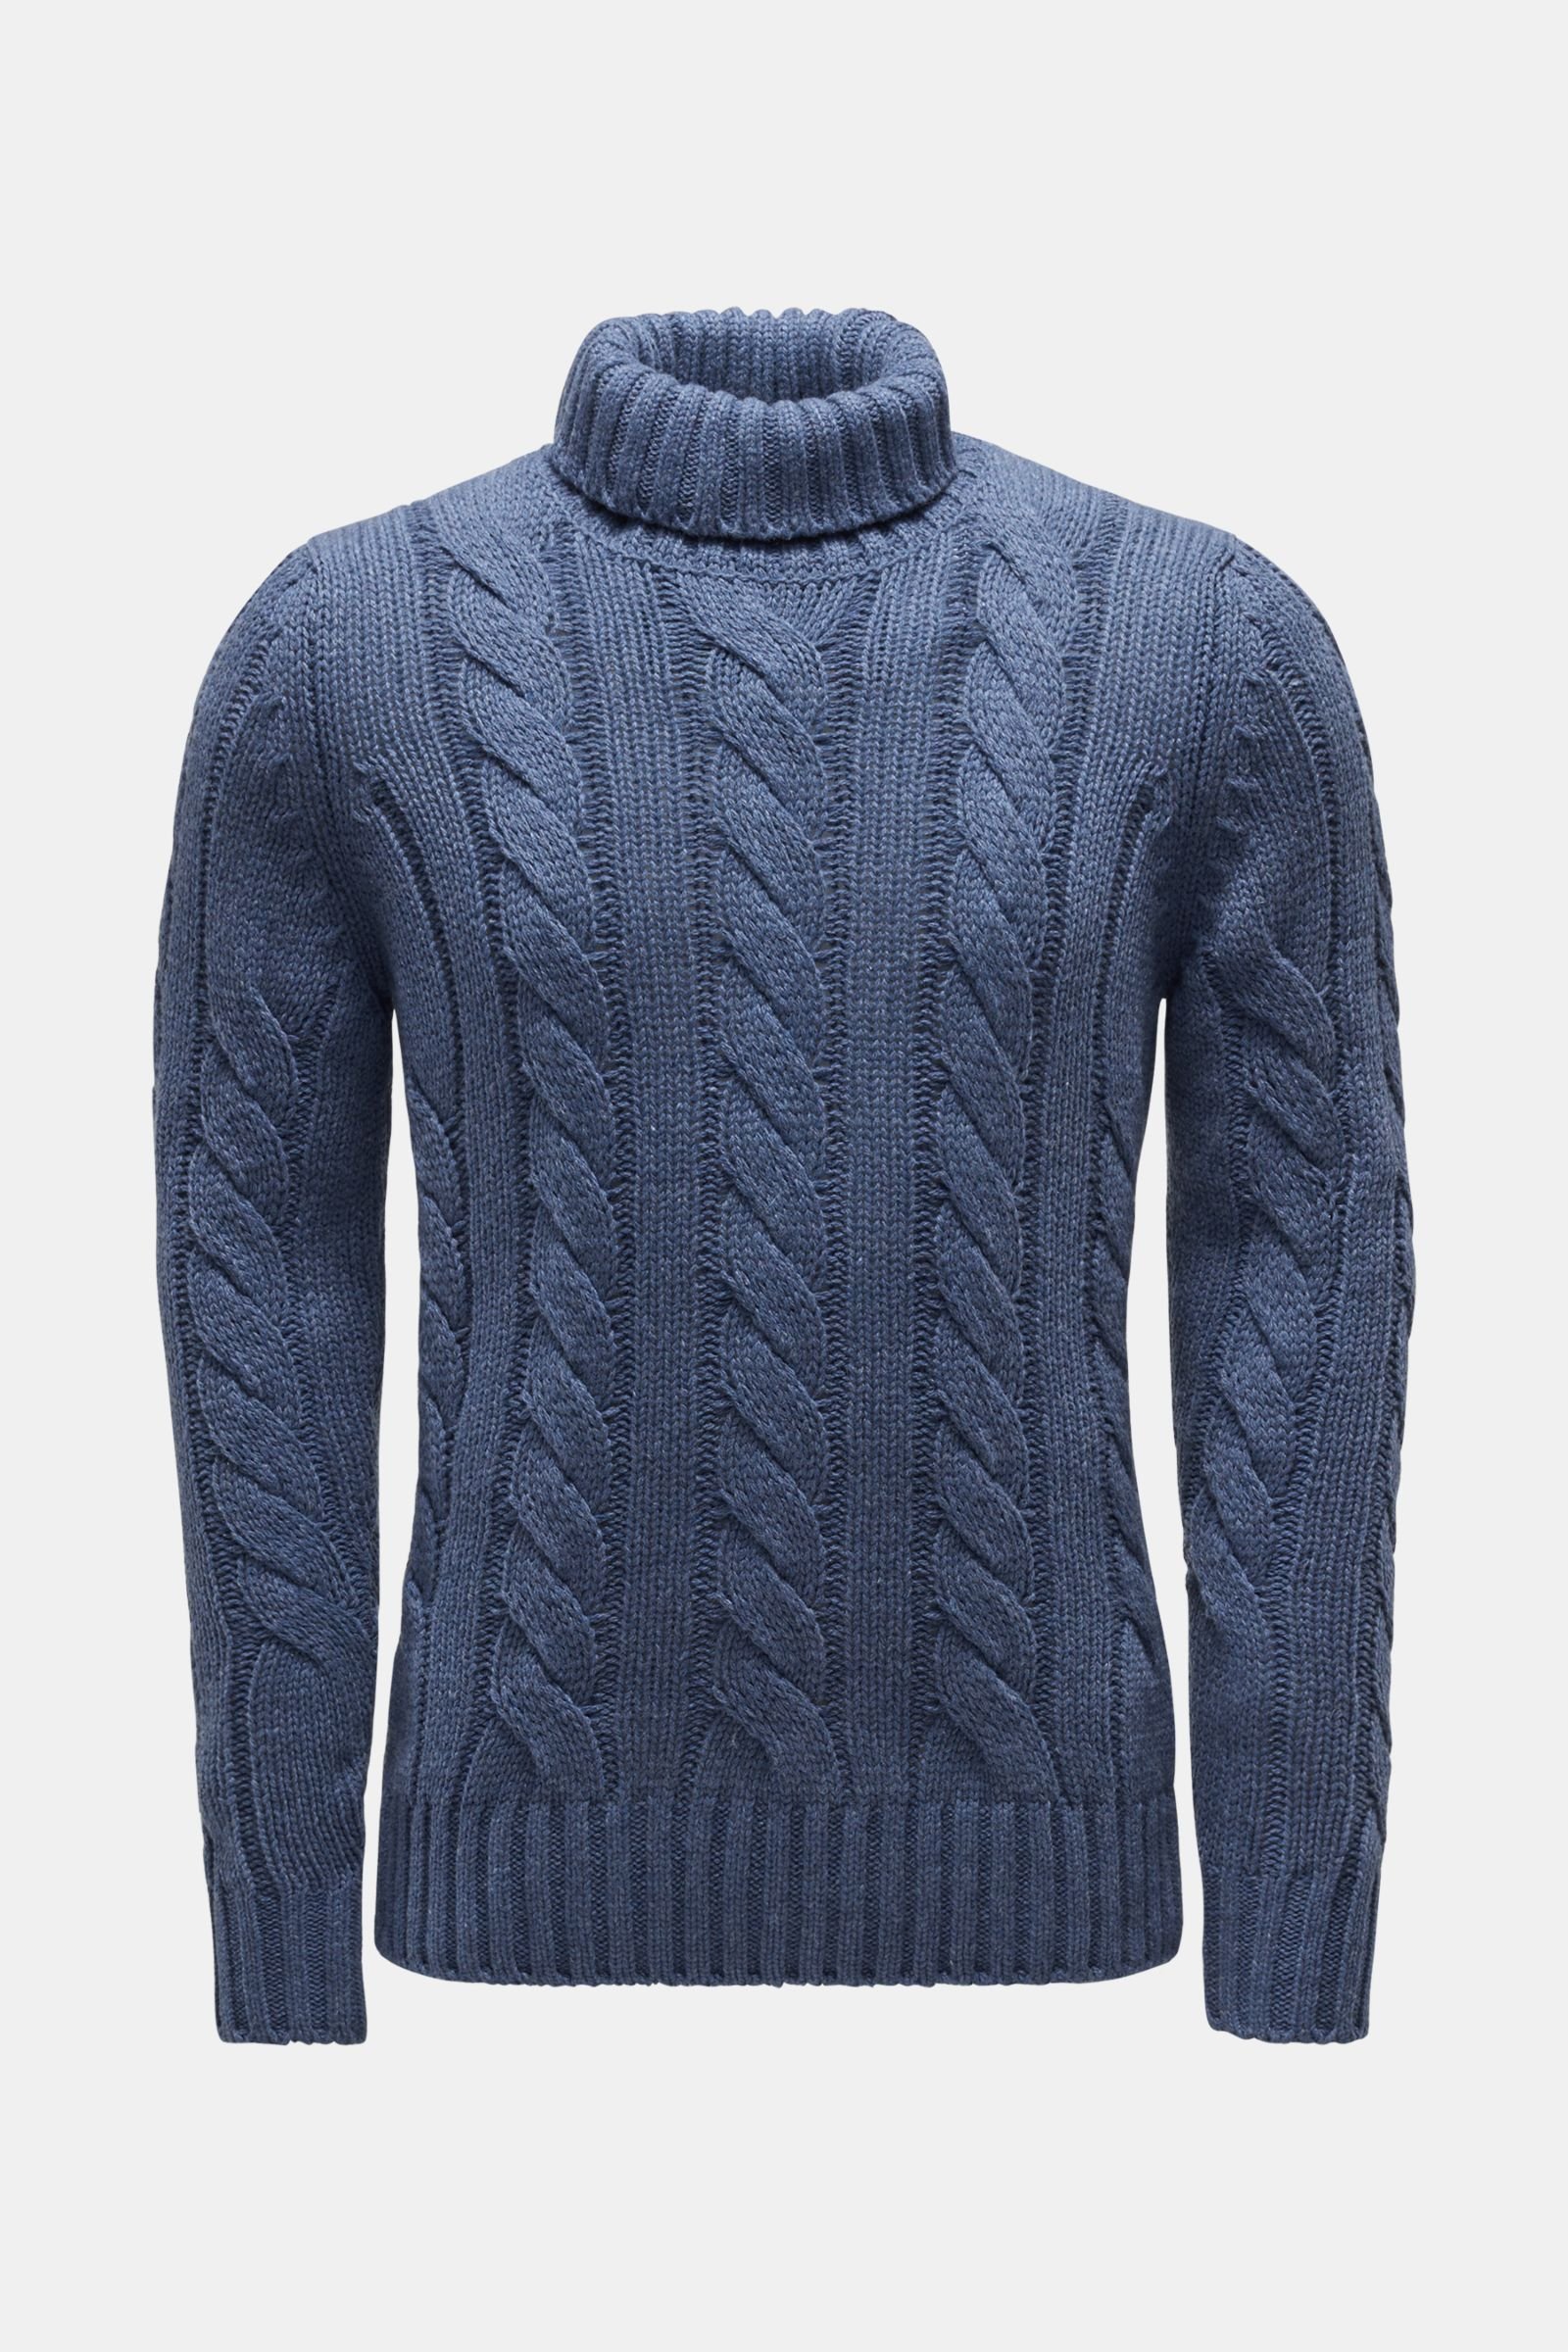 Cashmere turtleneck jumper grey-blue